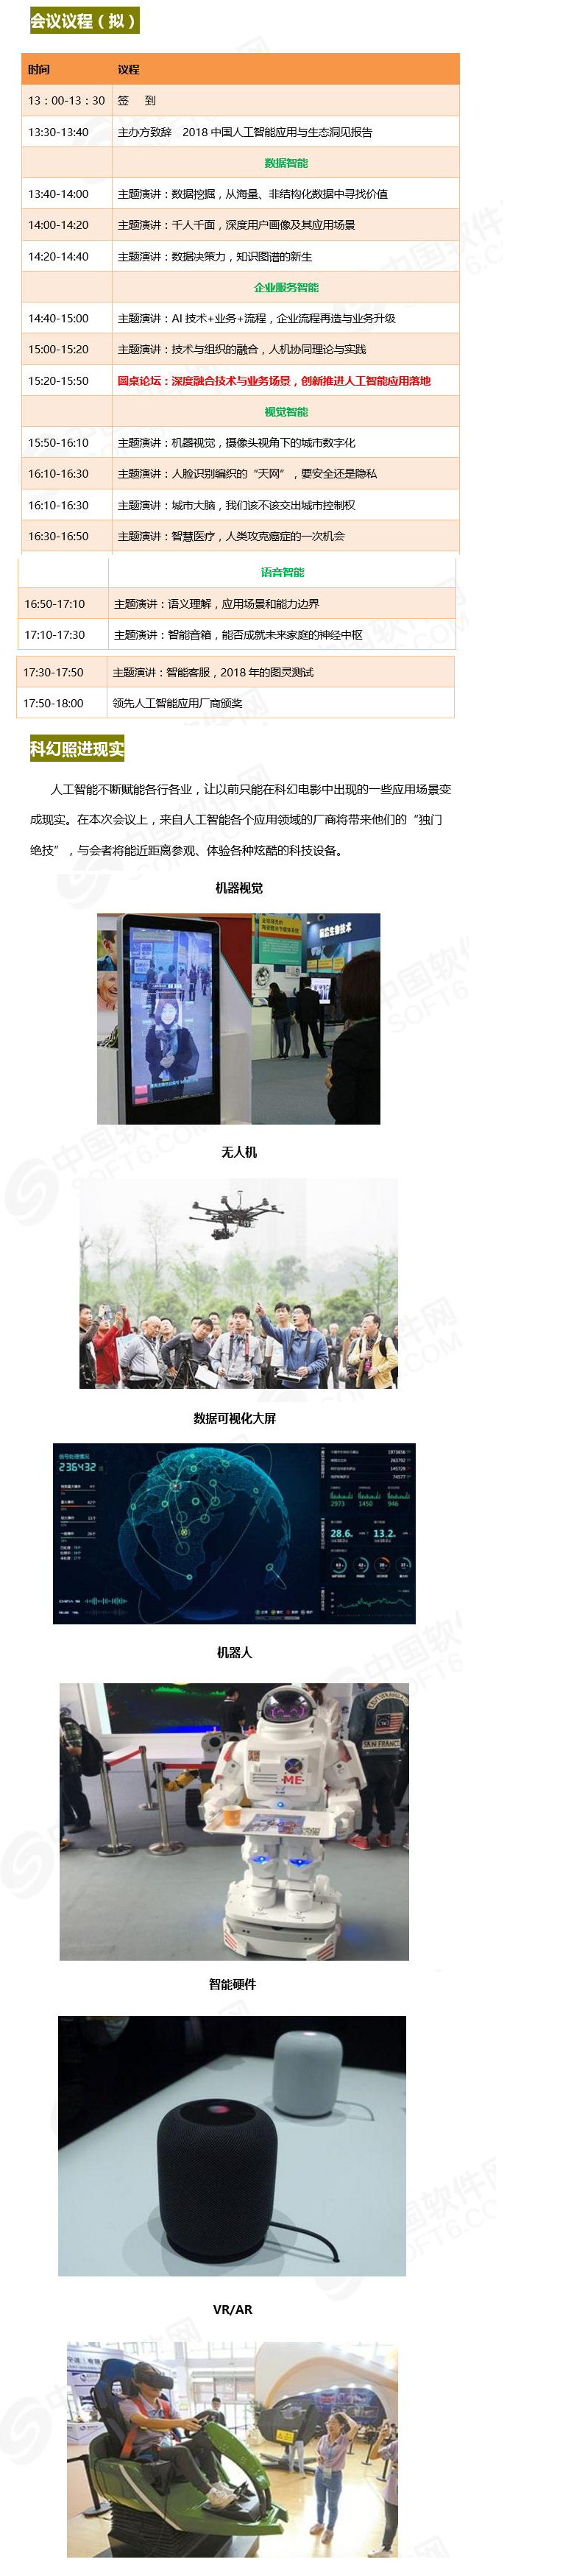 2018中国人工智能应用与生态峰会